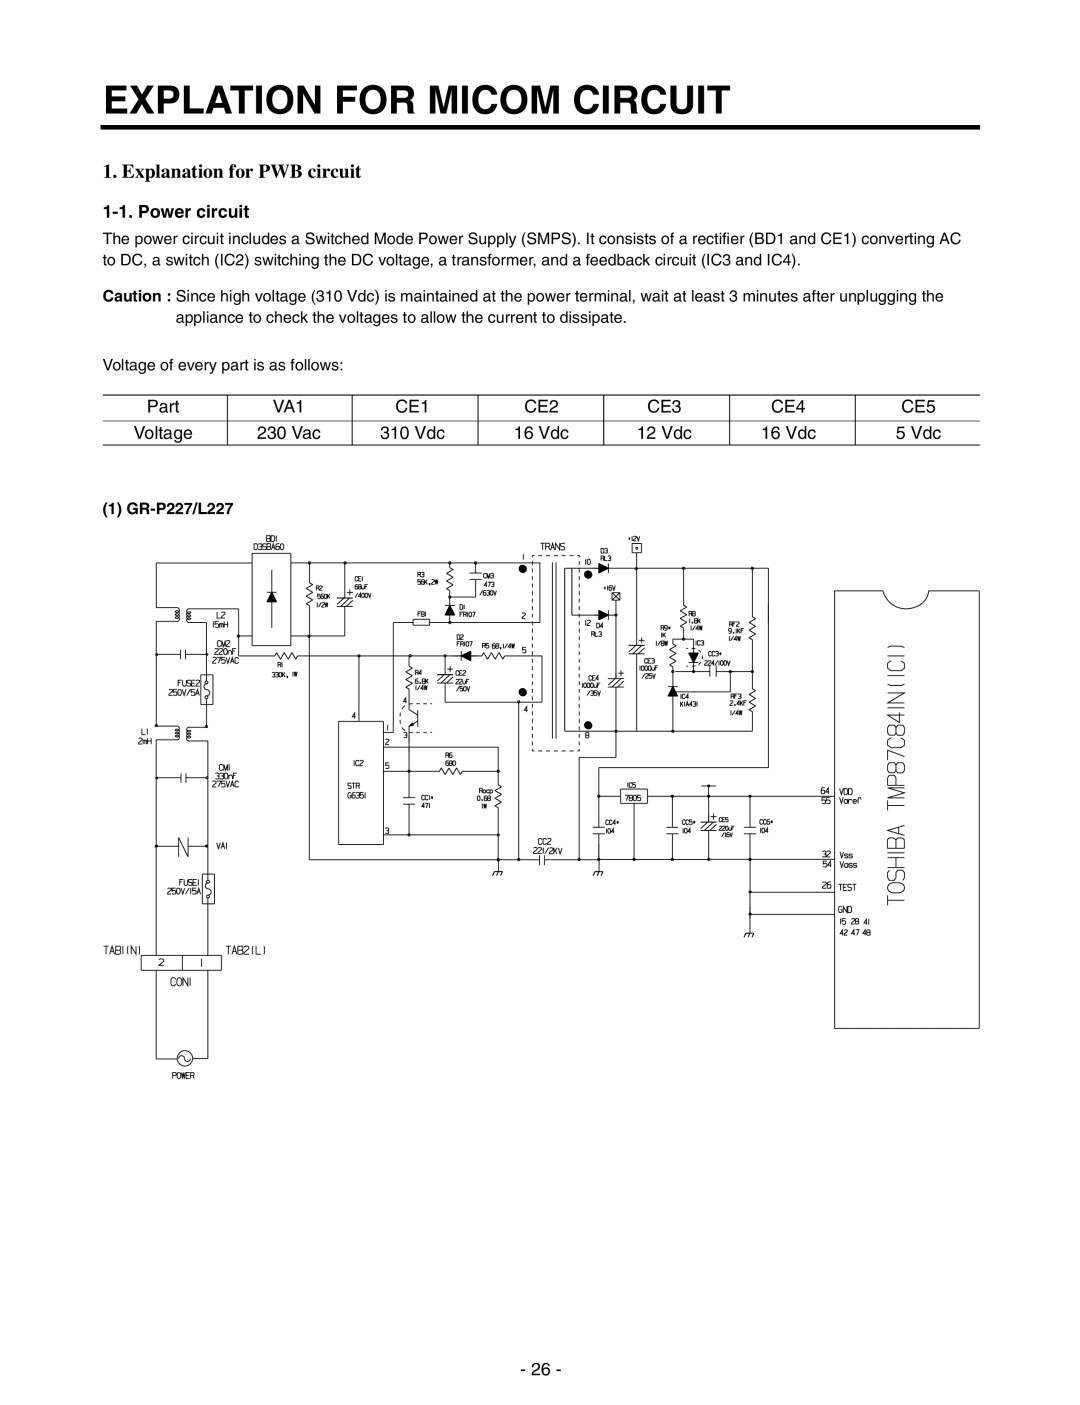 LG Electronics GR-P227/L227, GR-P257/L257 Explation For Micom Circuit, Explanation for PWB circuit, Power circuit 